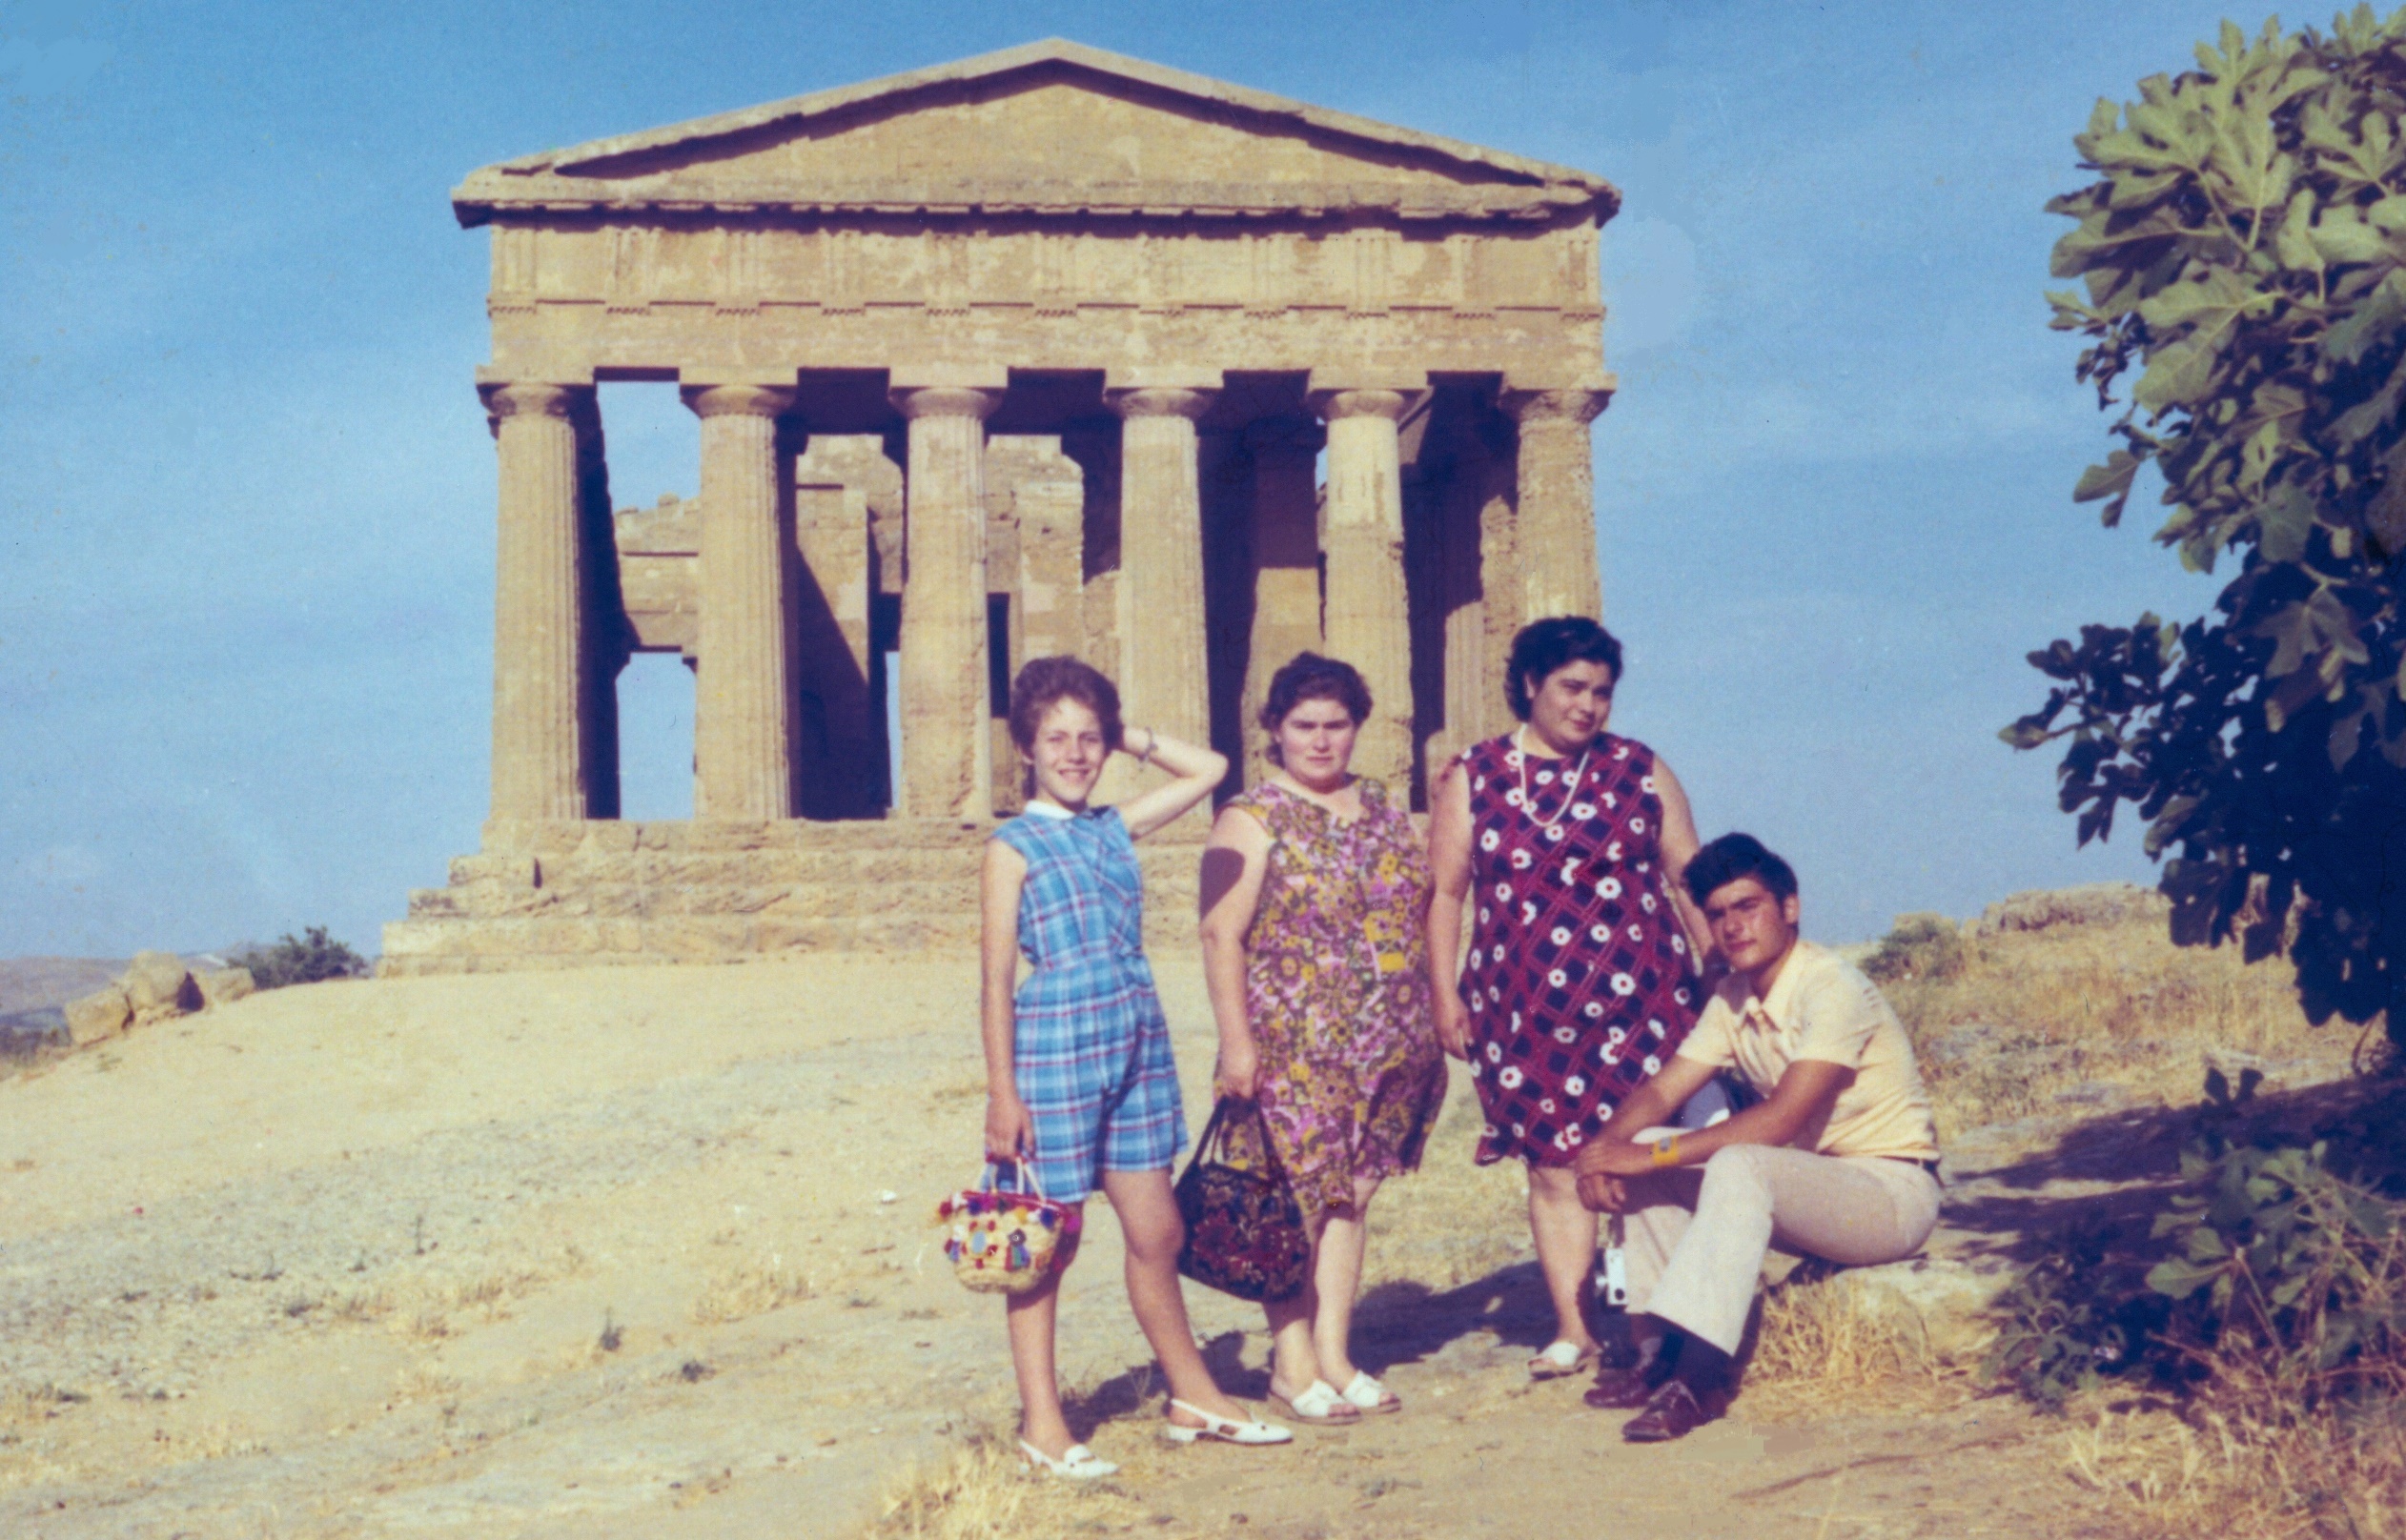 luglio 1971 Agrigento - Valle dei Templi: Roggio Linda, Schiavone Elena, Schiavone Lucia e Roggio Paride.